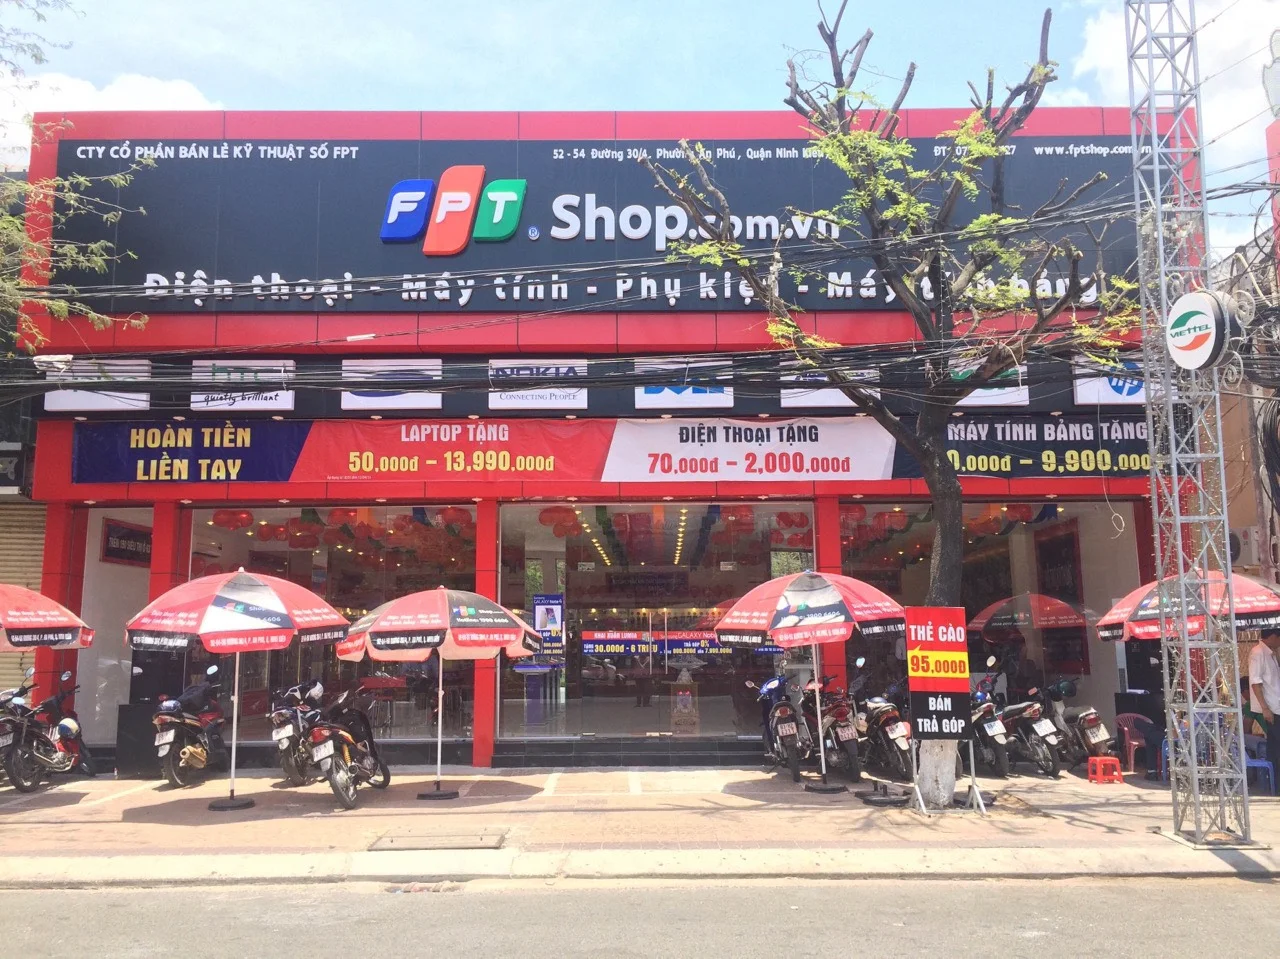 Cửa hàng FPT shop - Cửa hàng iphone uy tín Cần Thơ